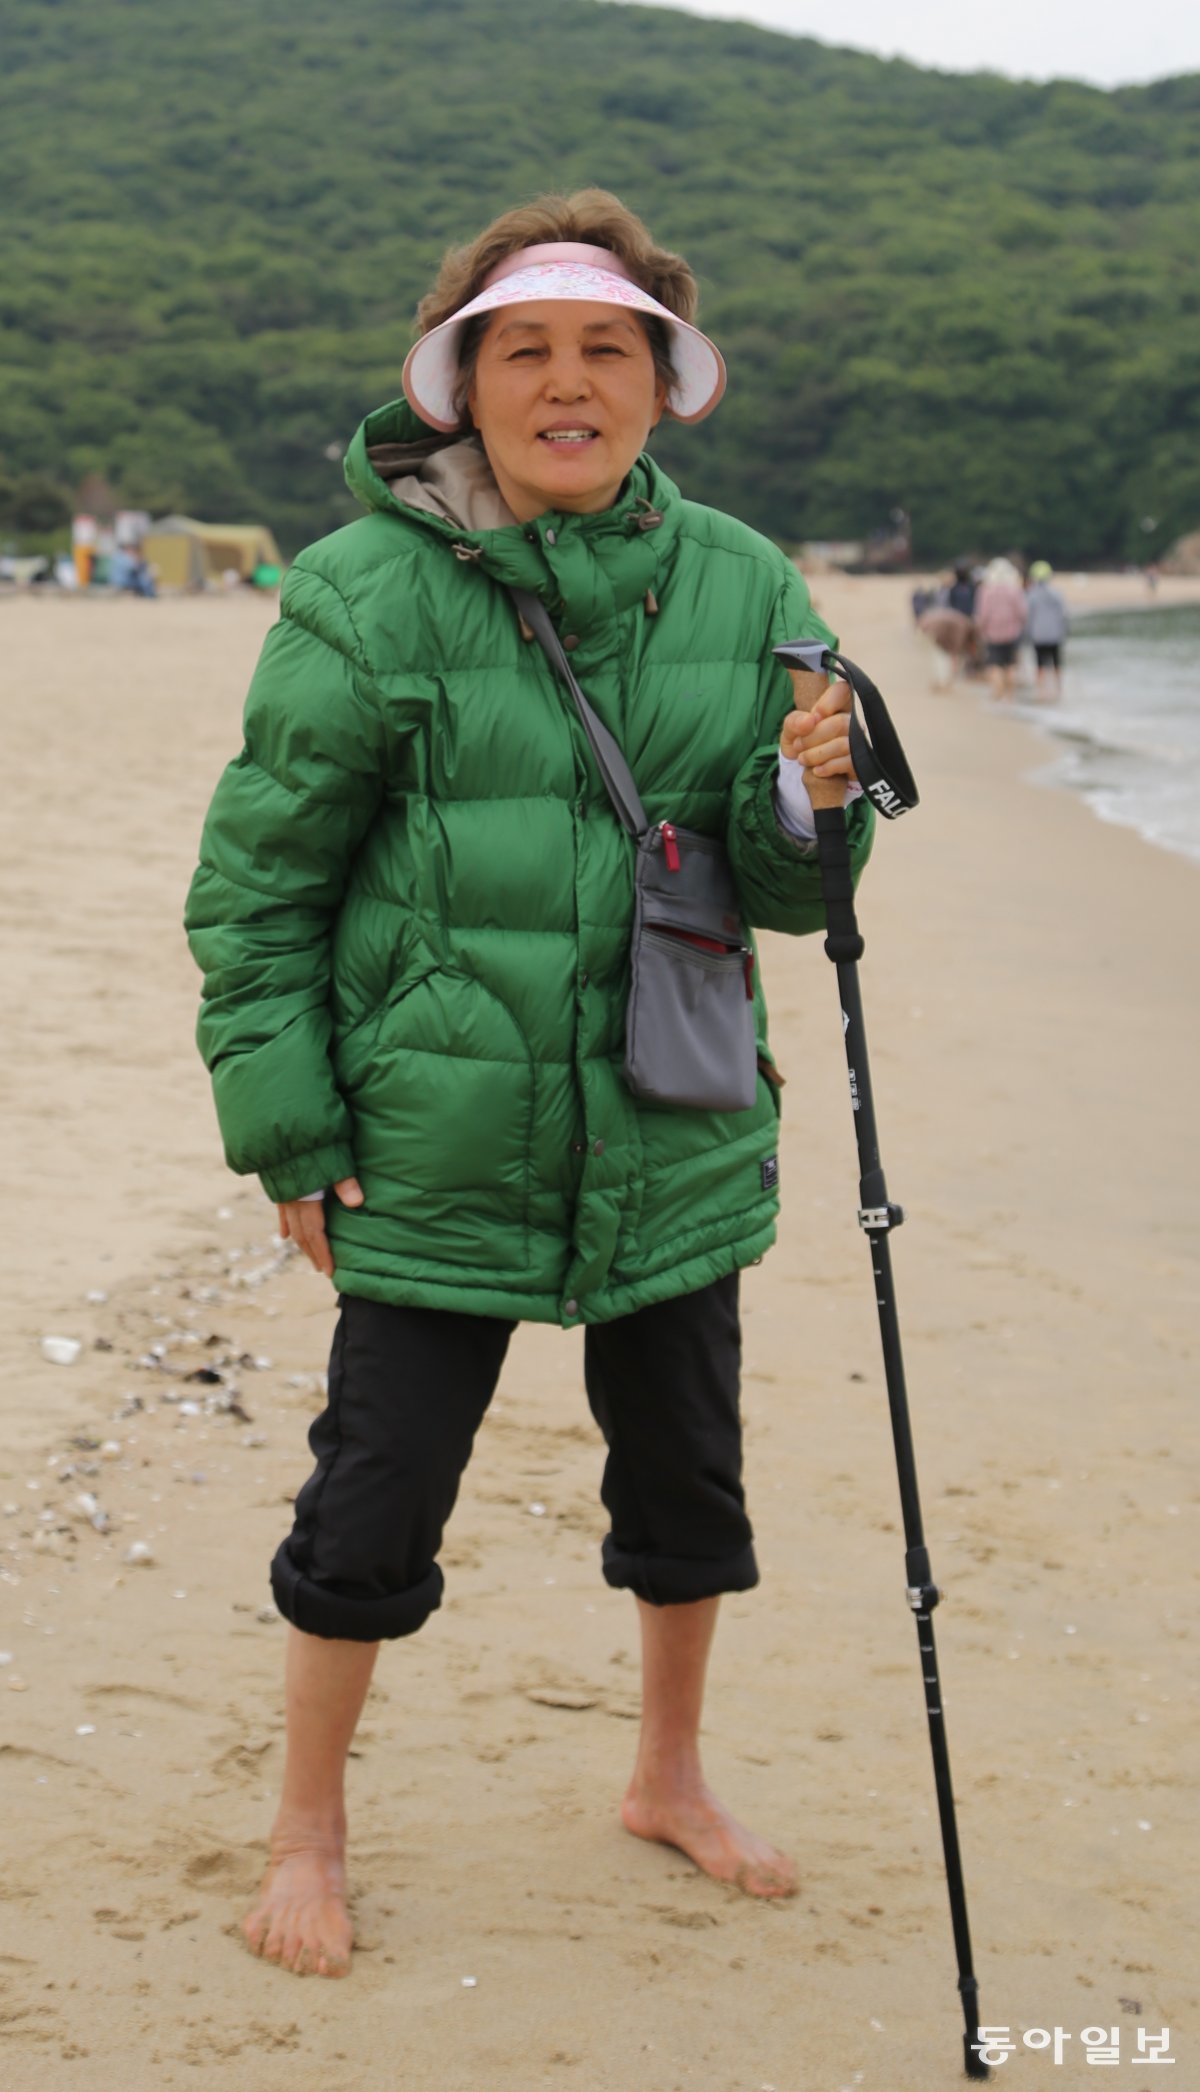 29년간 전신 근육강직 인간 증후군을 앓고 있는 박상옥 씨가 인천 중구 무의도 하나개해수욕장에서 혼자 서 있다. 그는 해변 맨발 걷기로 “아픈 뒤 처음 혼자서 걸었다”고 했다. 무의도=양종구 기자 yjongk@donga.com